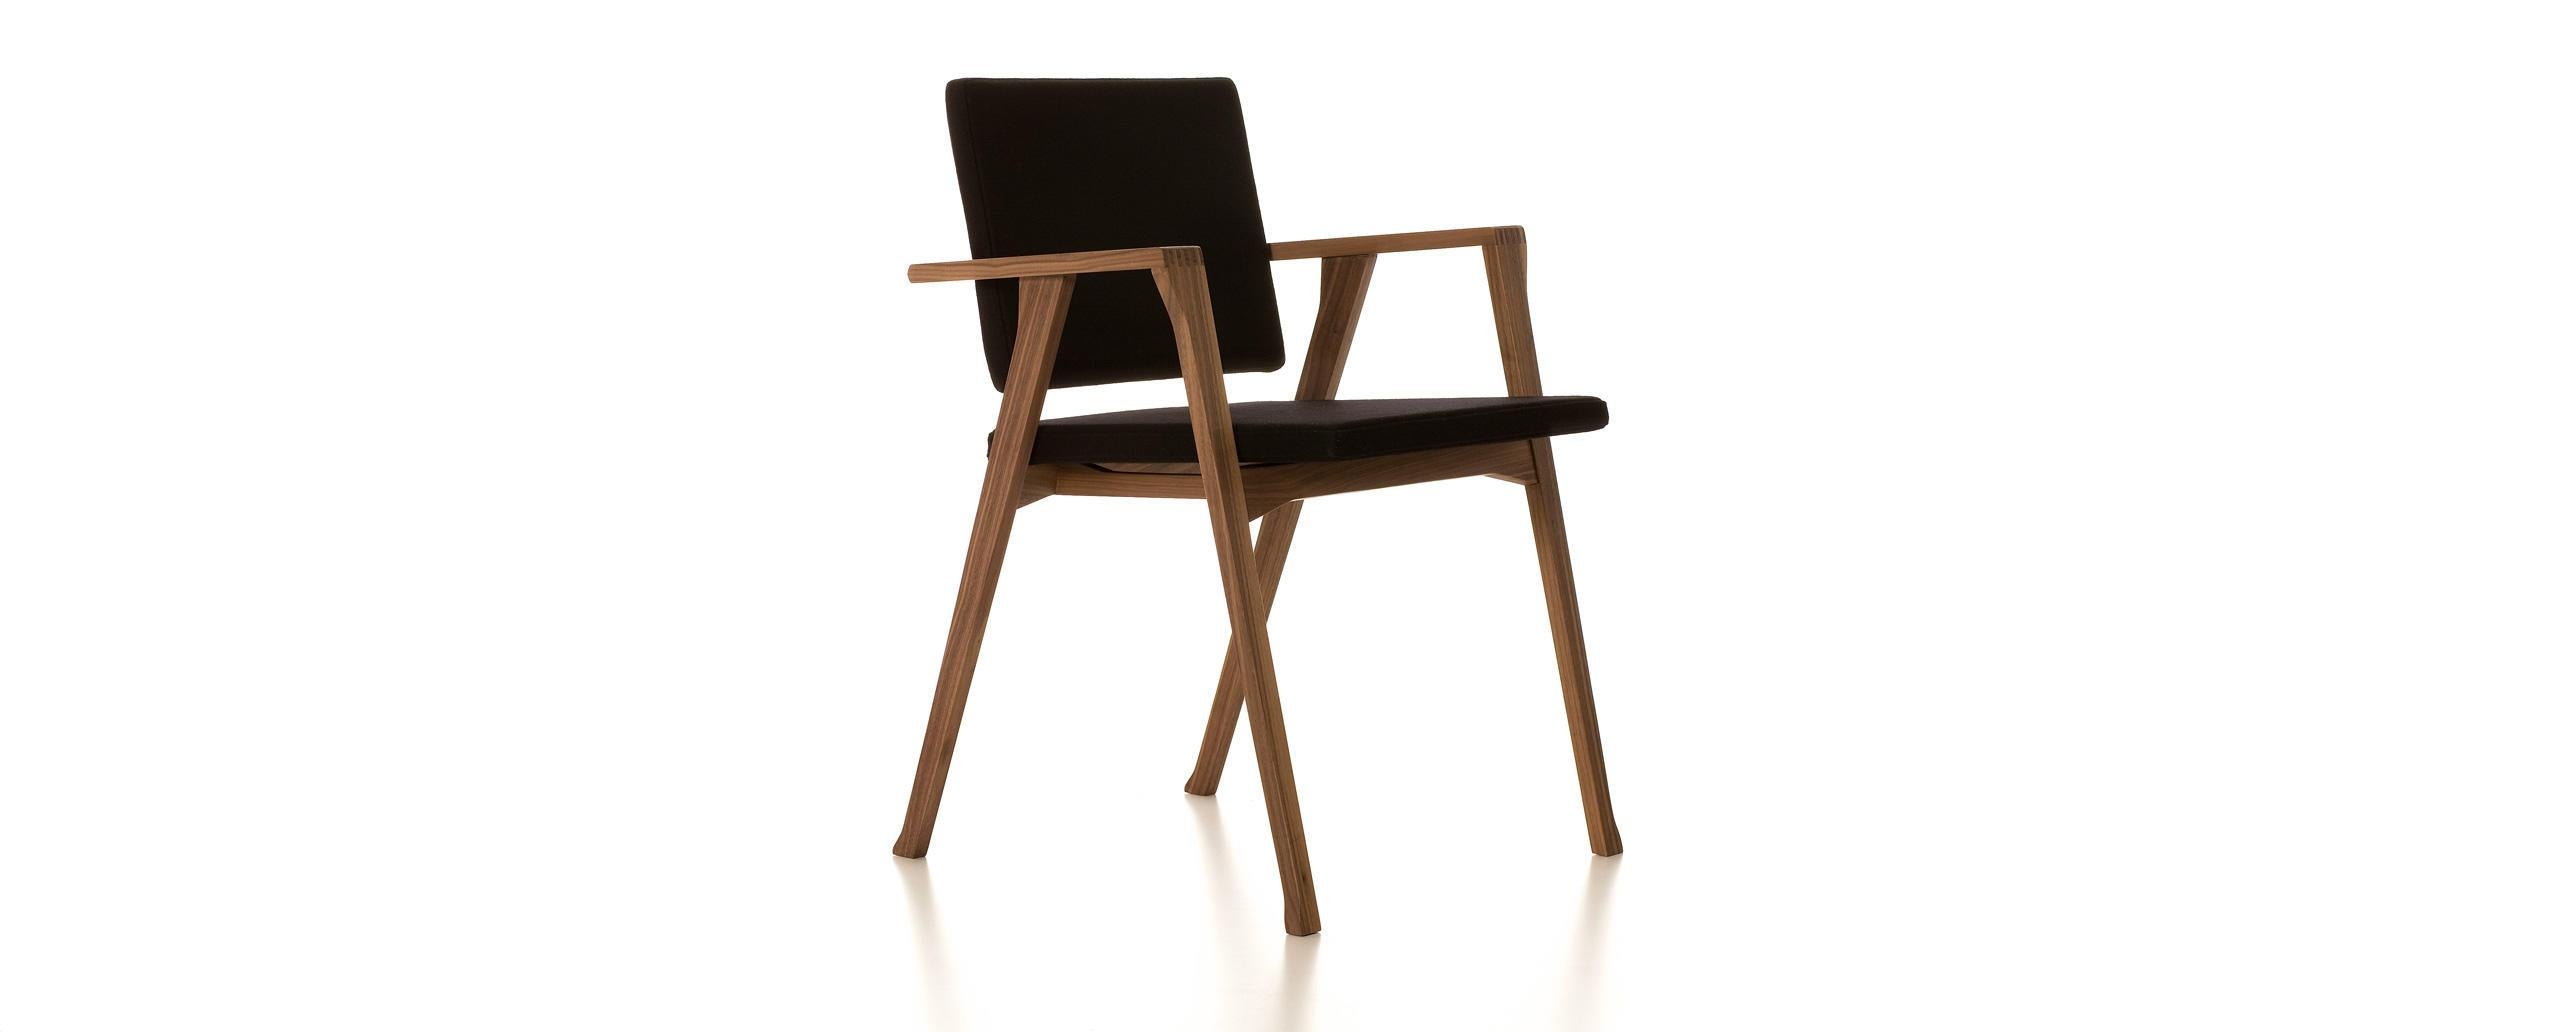 Chaise conçue par Franco Albini en 1953. Relancé en 2013.
Fabriqué par Cassina en Italie.

Le petit fauteuil, baptisé Luisa, est le fruit d'un processus d'exploration de quinze ans, axé sur la création d'un archétype des éléments de base d'un